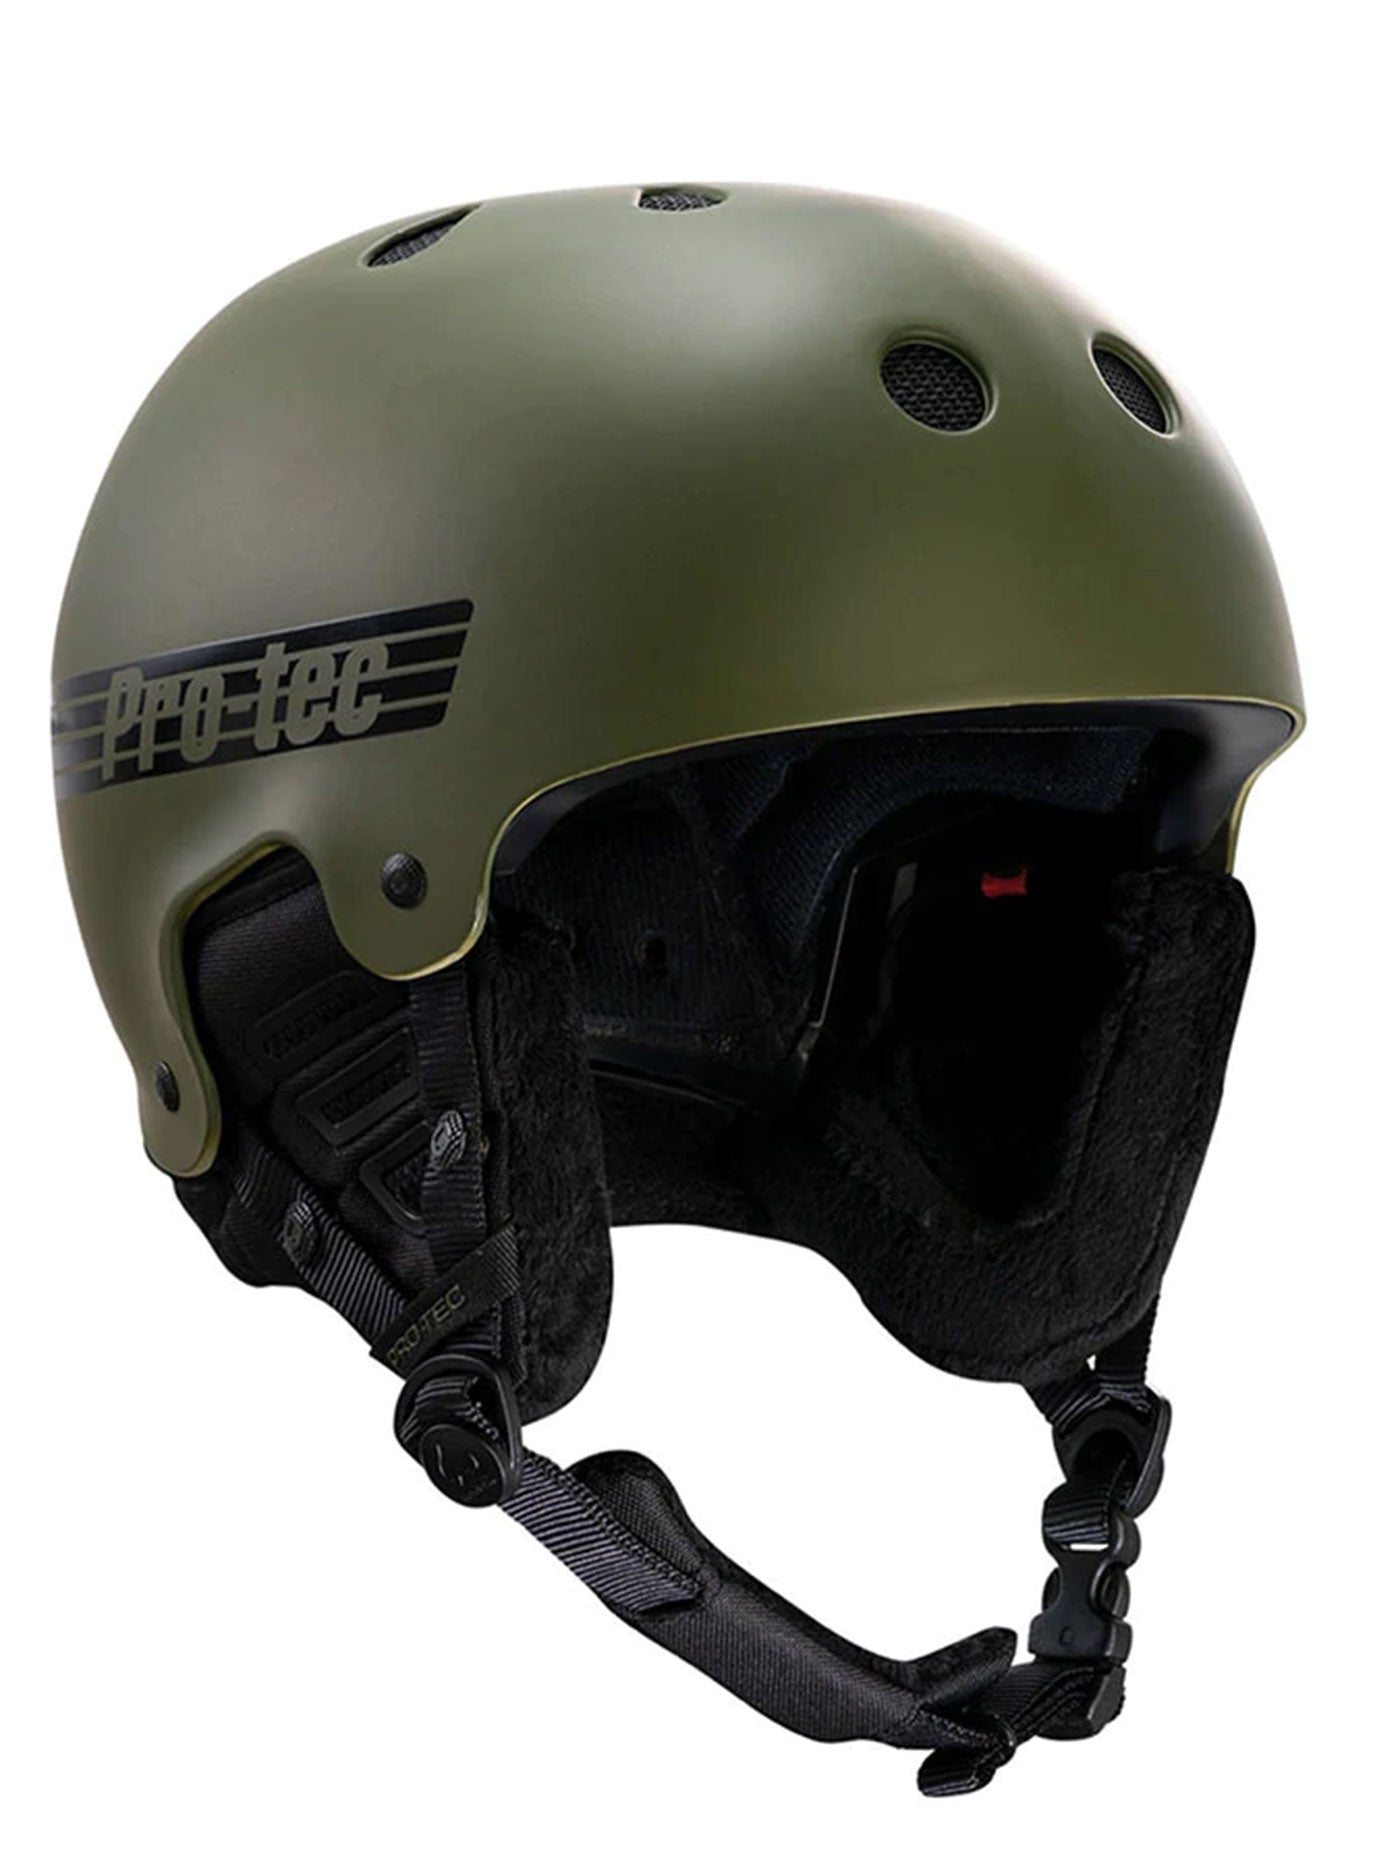 Pro-Tec Old School Certified Snowboard Helmet